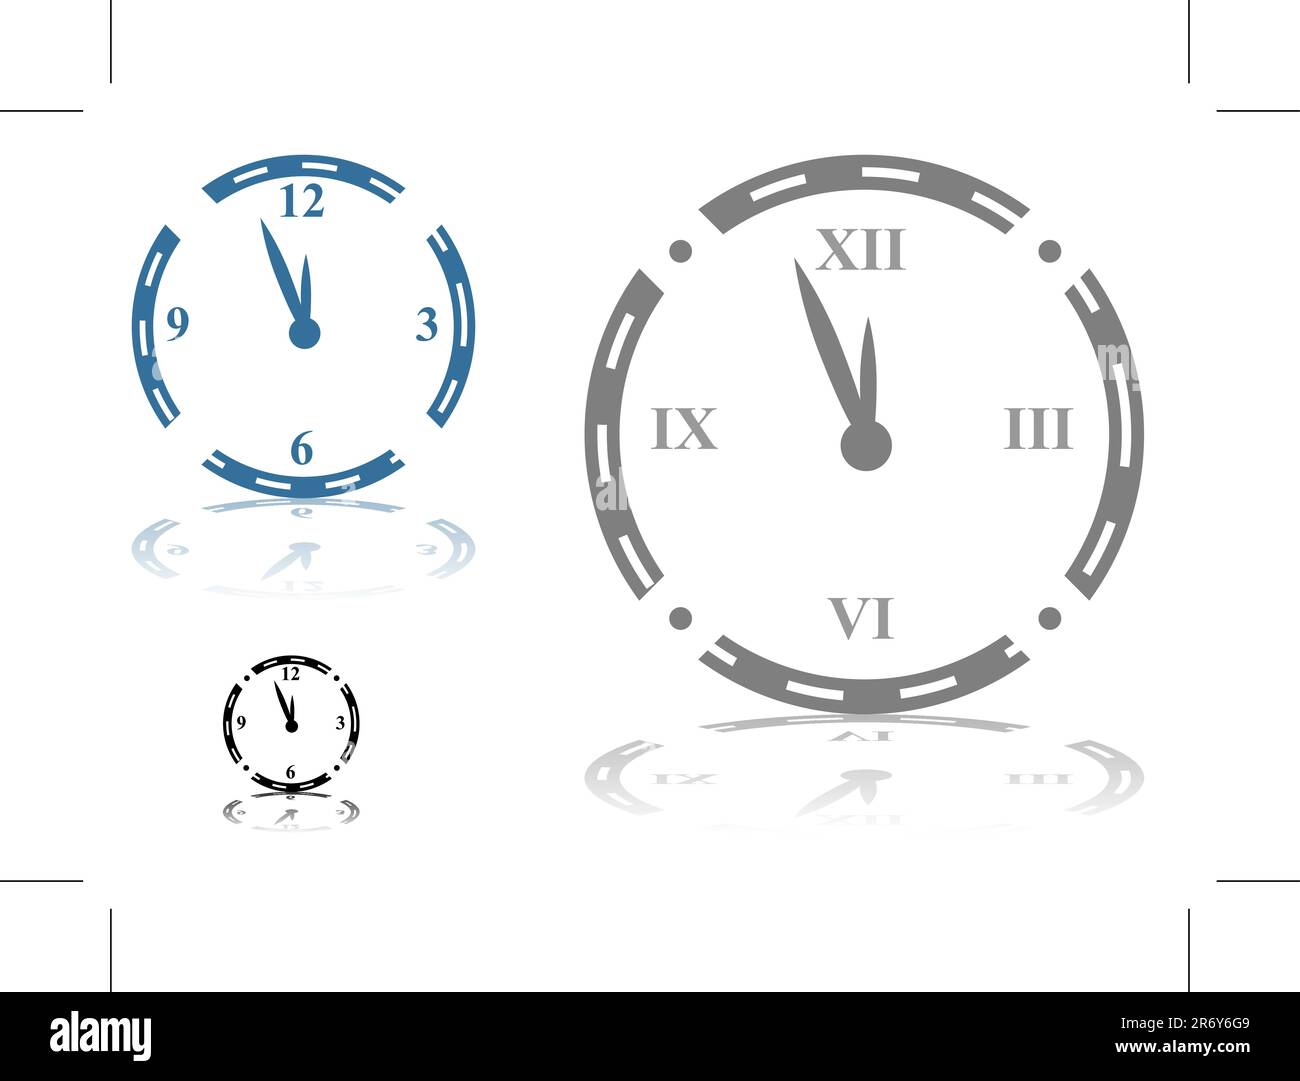 Immagine di un orologio con numeri romani - impostato. Illustrazione Vettoriale